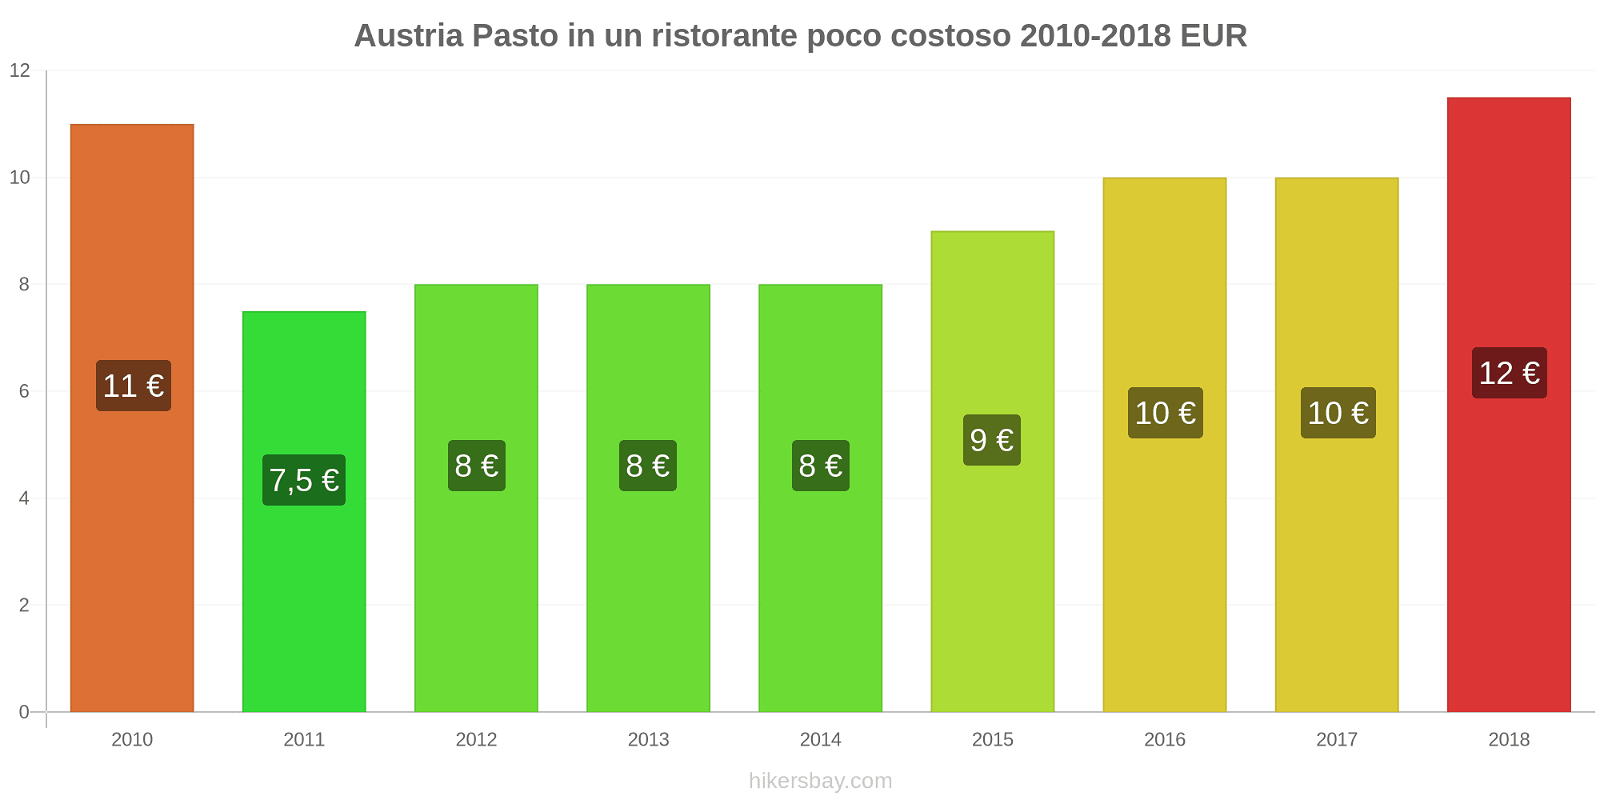 Austria cambi di prezzo Pasto in un ristorante economico hikersbay.com